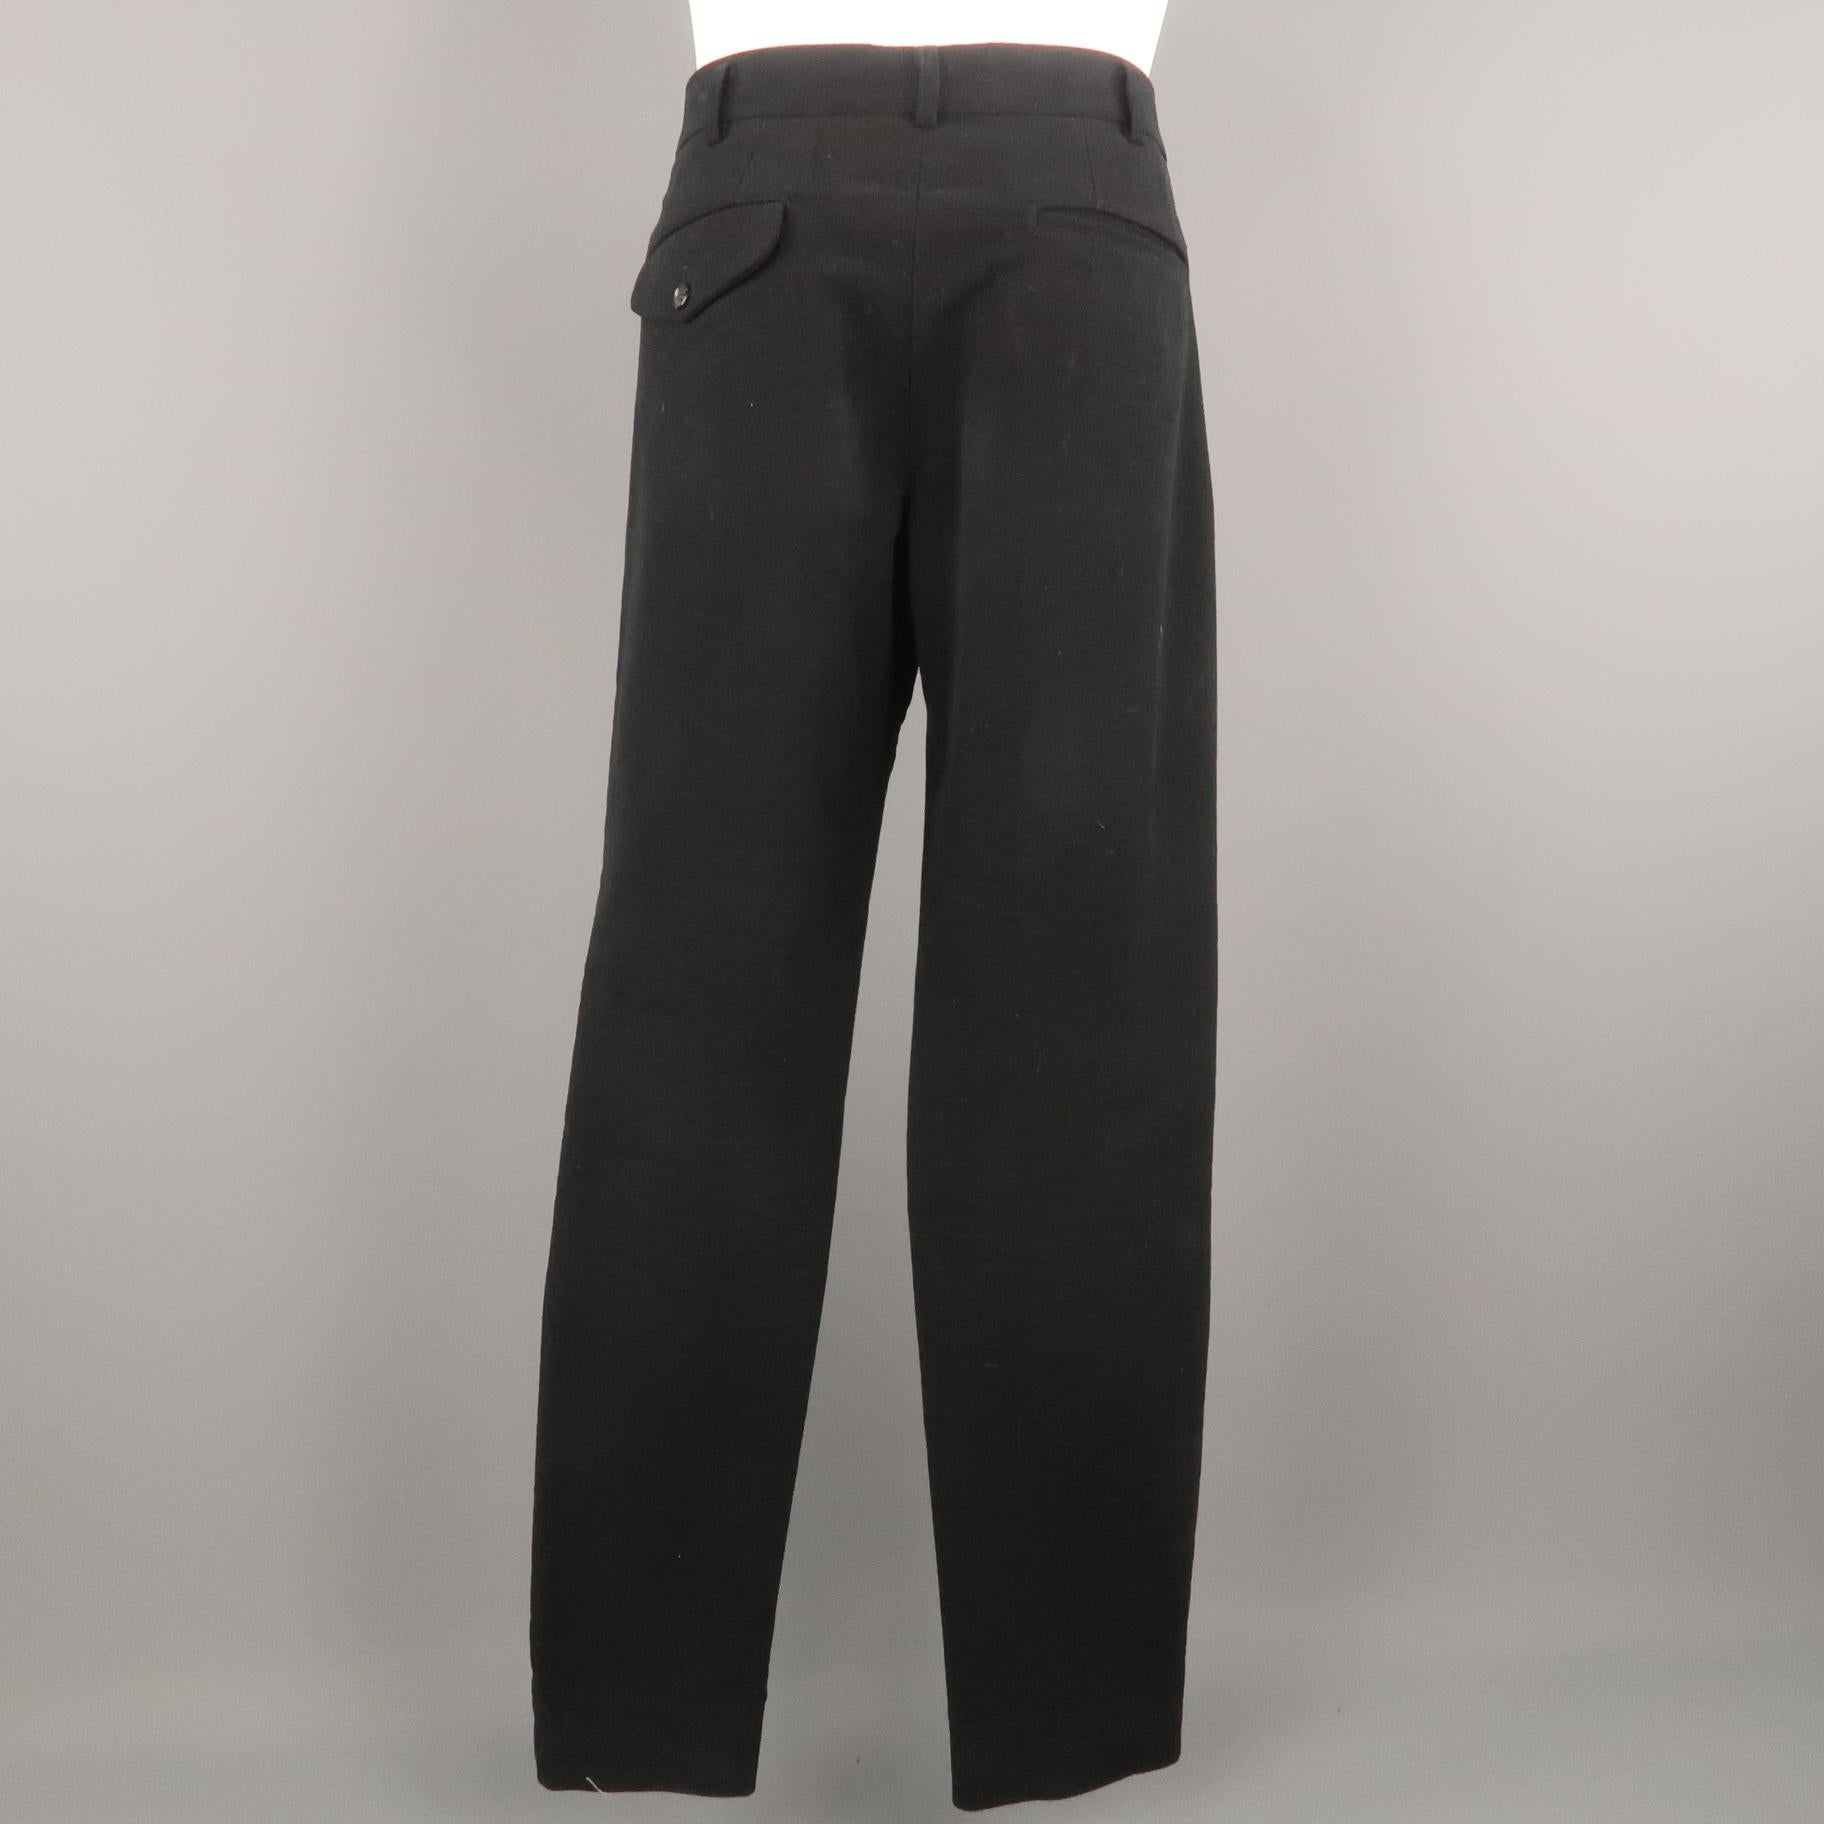 Men's COMME des GARCONS HOMME PLUS Size L Black Cotton Blend 35 Zip Fly Casual Pants